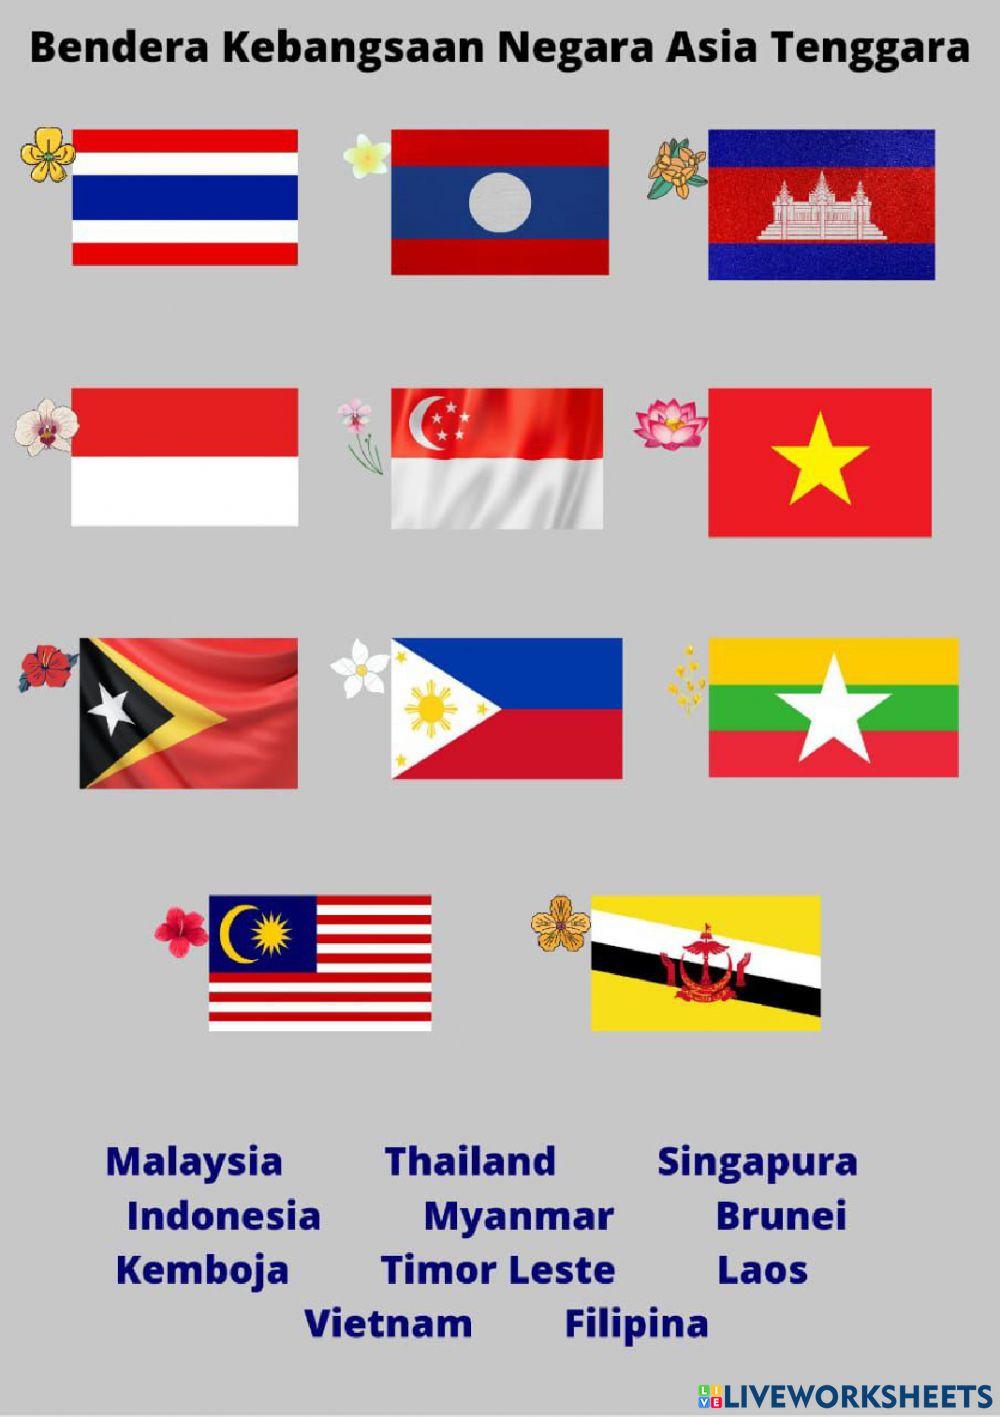 Bendera Kebangsaan Negara Asia Tenggara